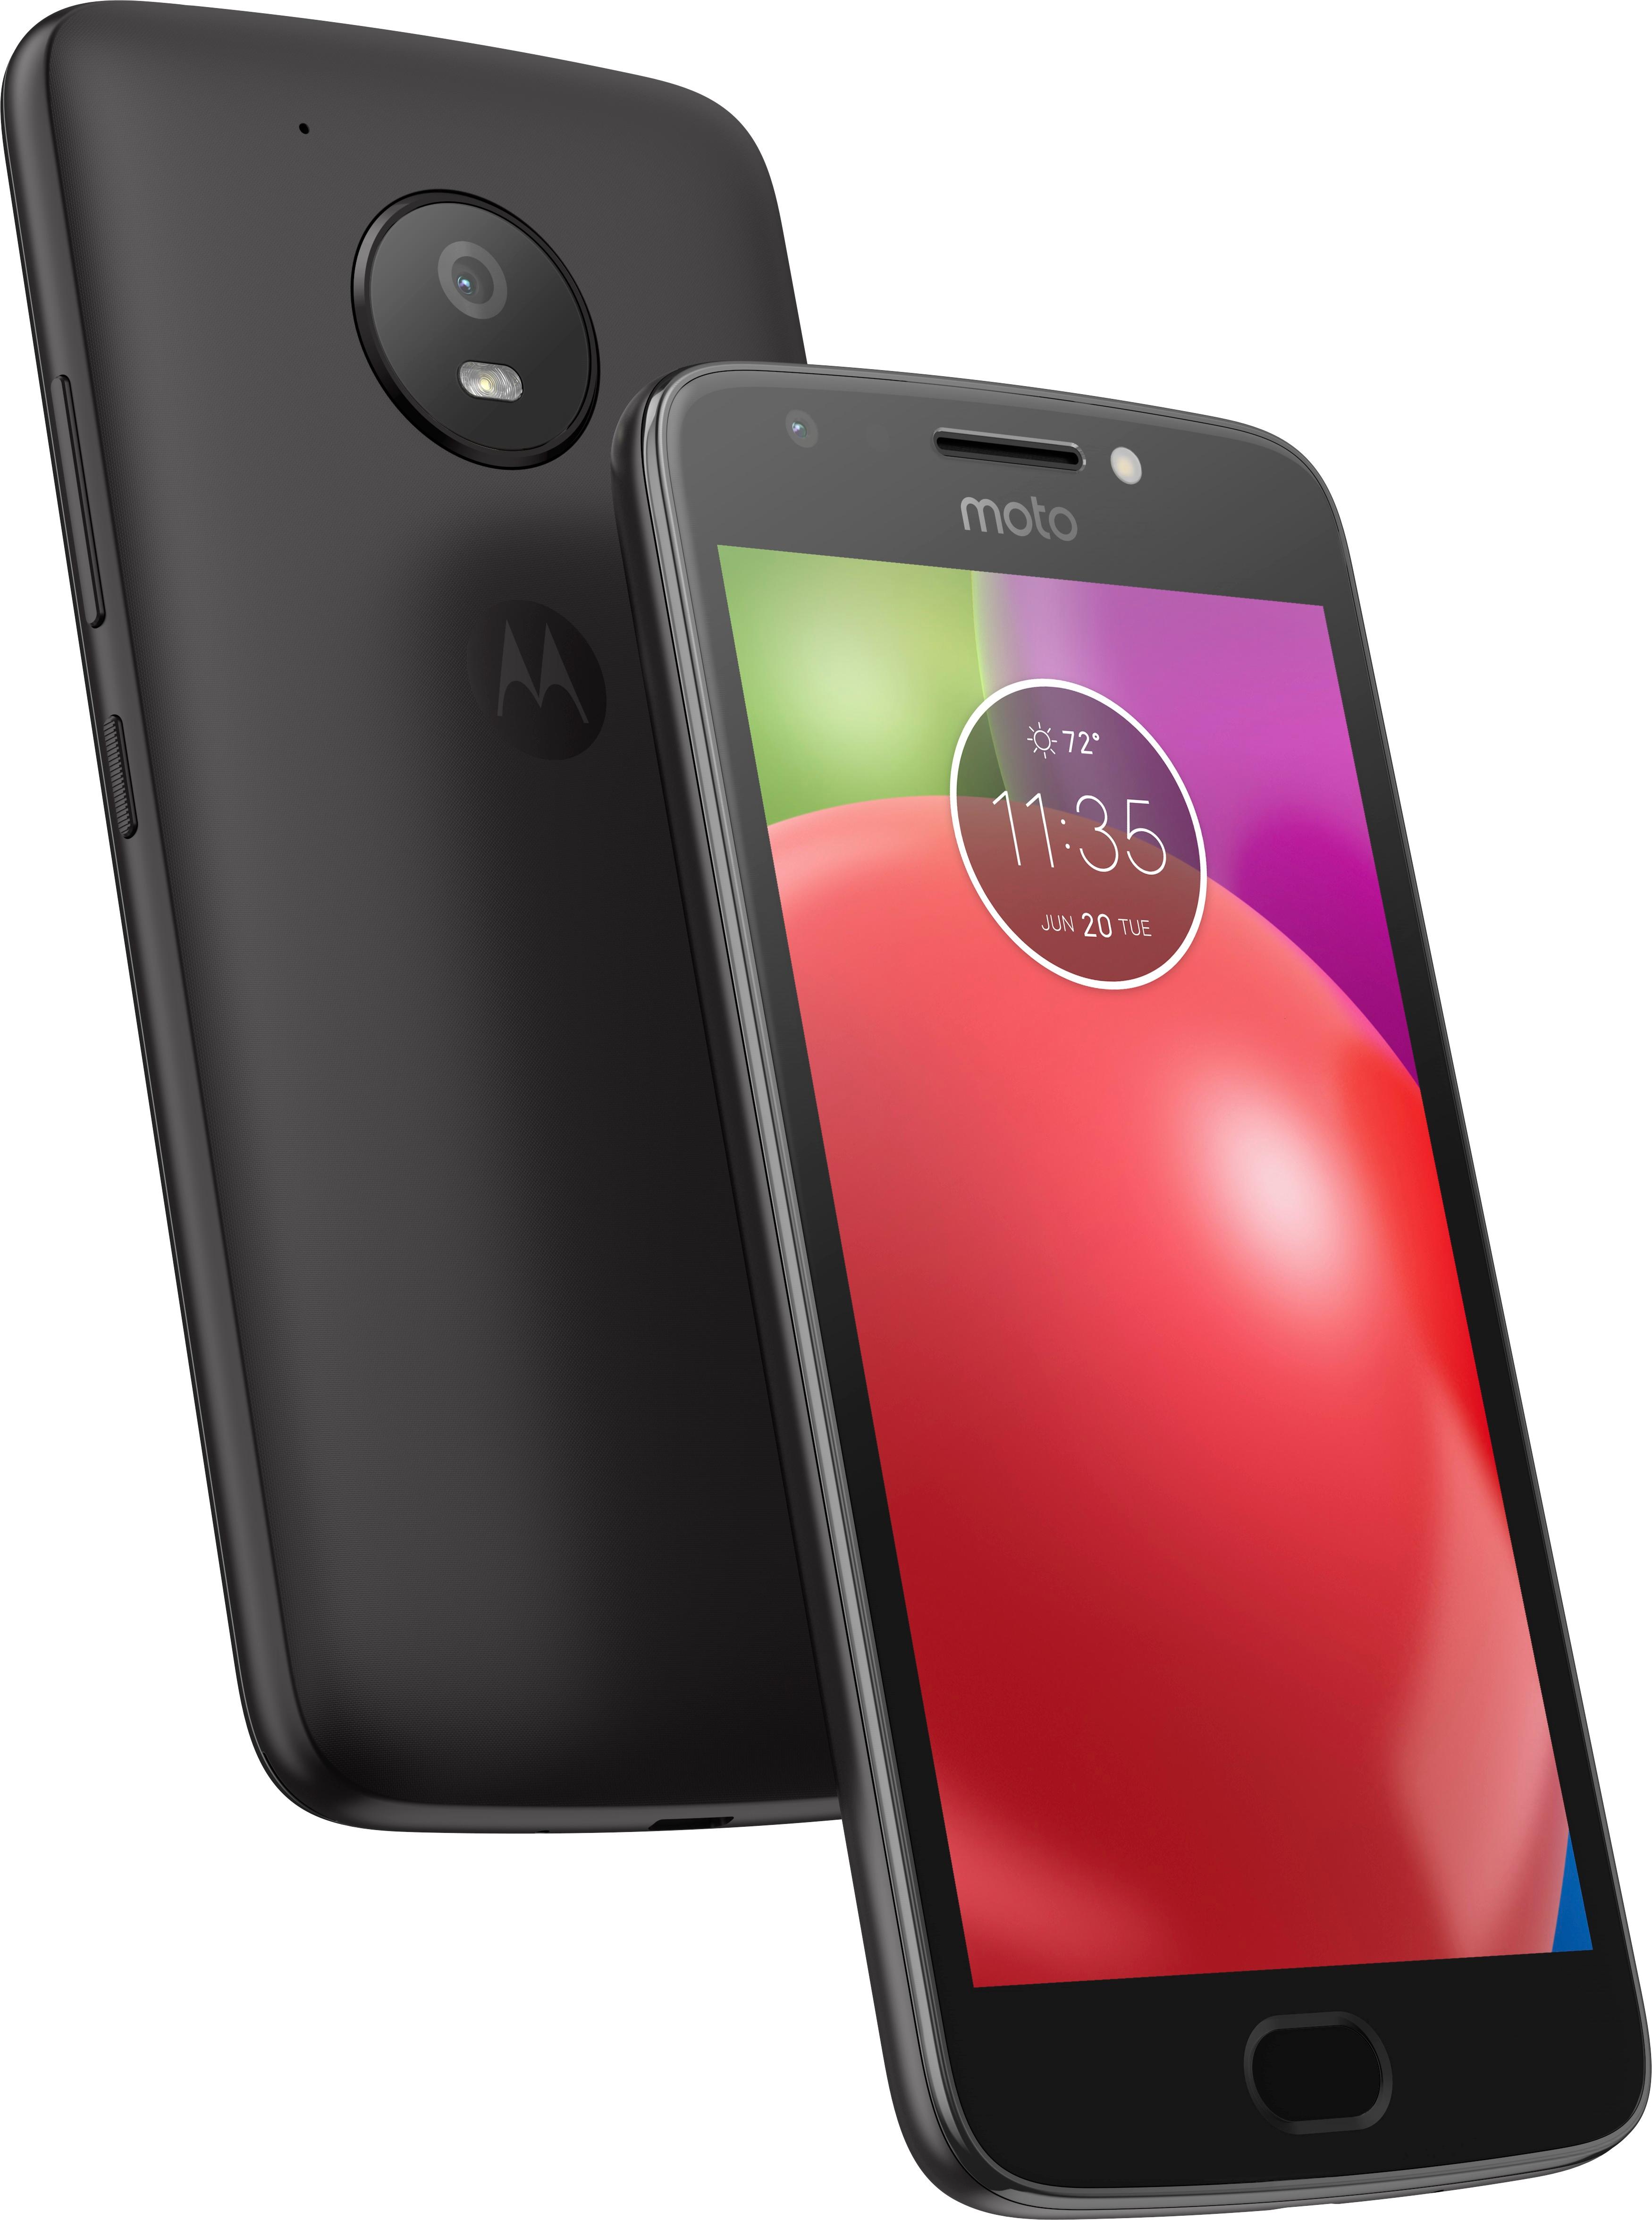 Motorola Moto E4 Plus - MOTO E (4) PLUS - 16GB - N/a (Sprint - Locked)  (z02548)